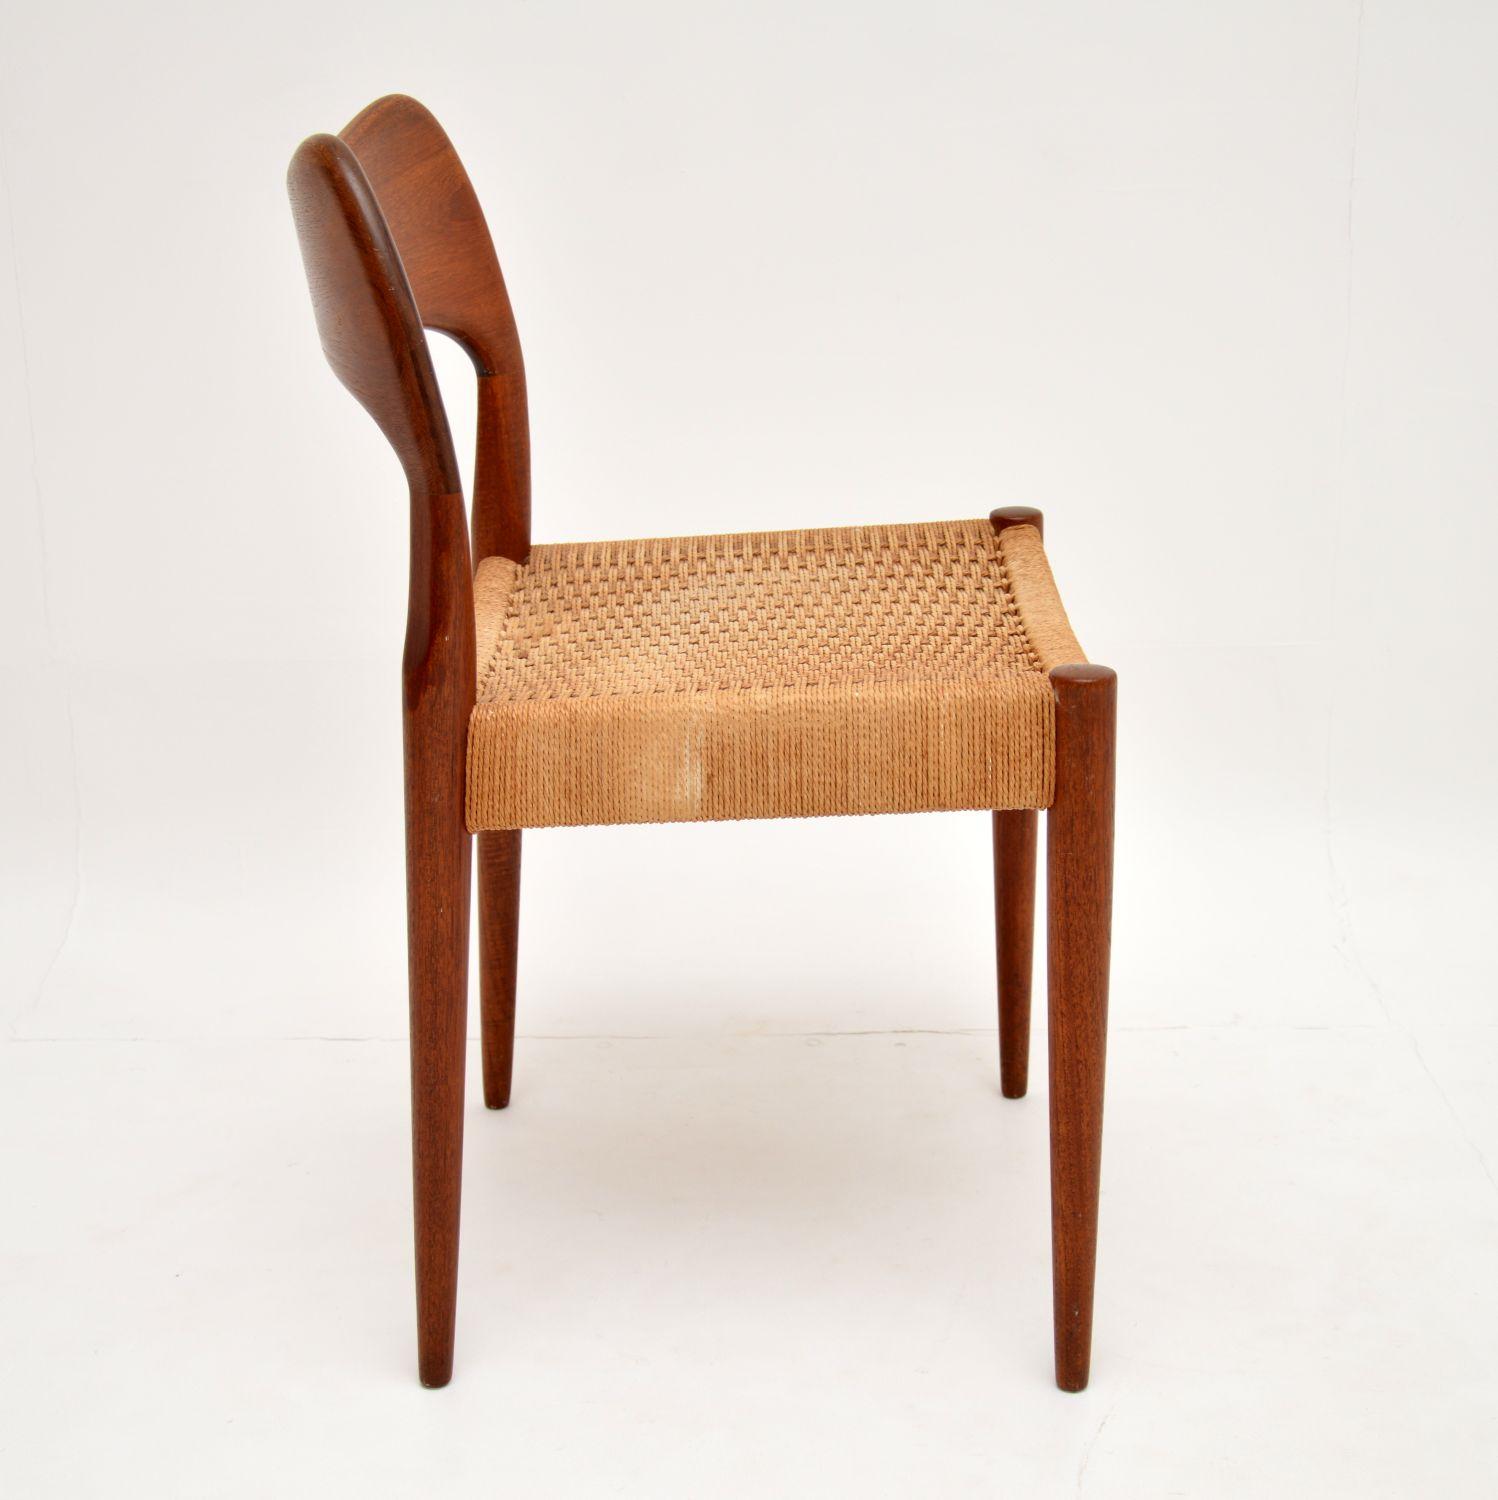 Danish Teak Vintage Chair by Arne Hovmand-Olsen for Mogens Kold 1